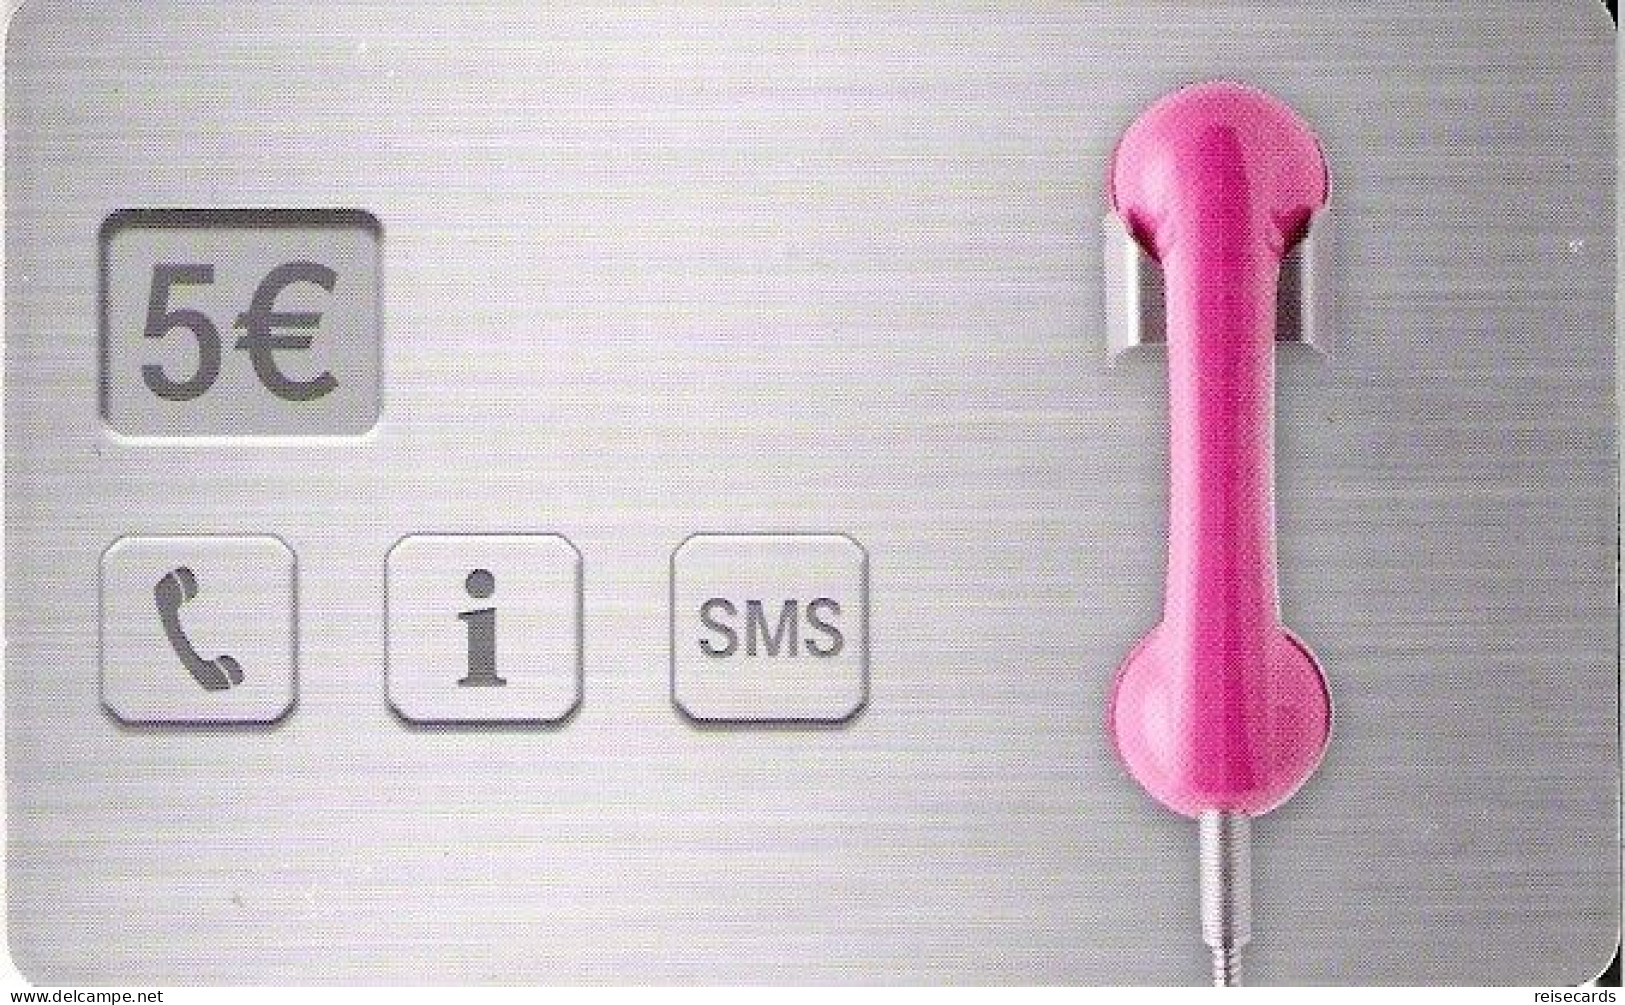 Germany: Telekom PD 01 10.07 Anruf Oder SMS, Bargeldlos - P & PD-Series: Schalterkarten Der Dt. Telekom